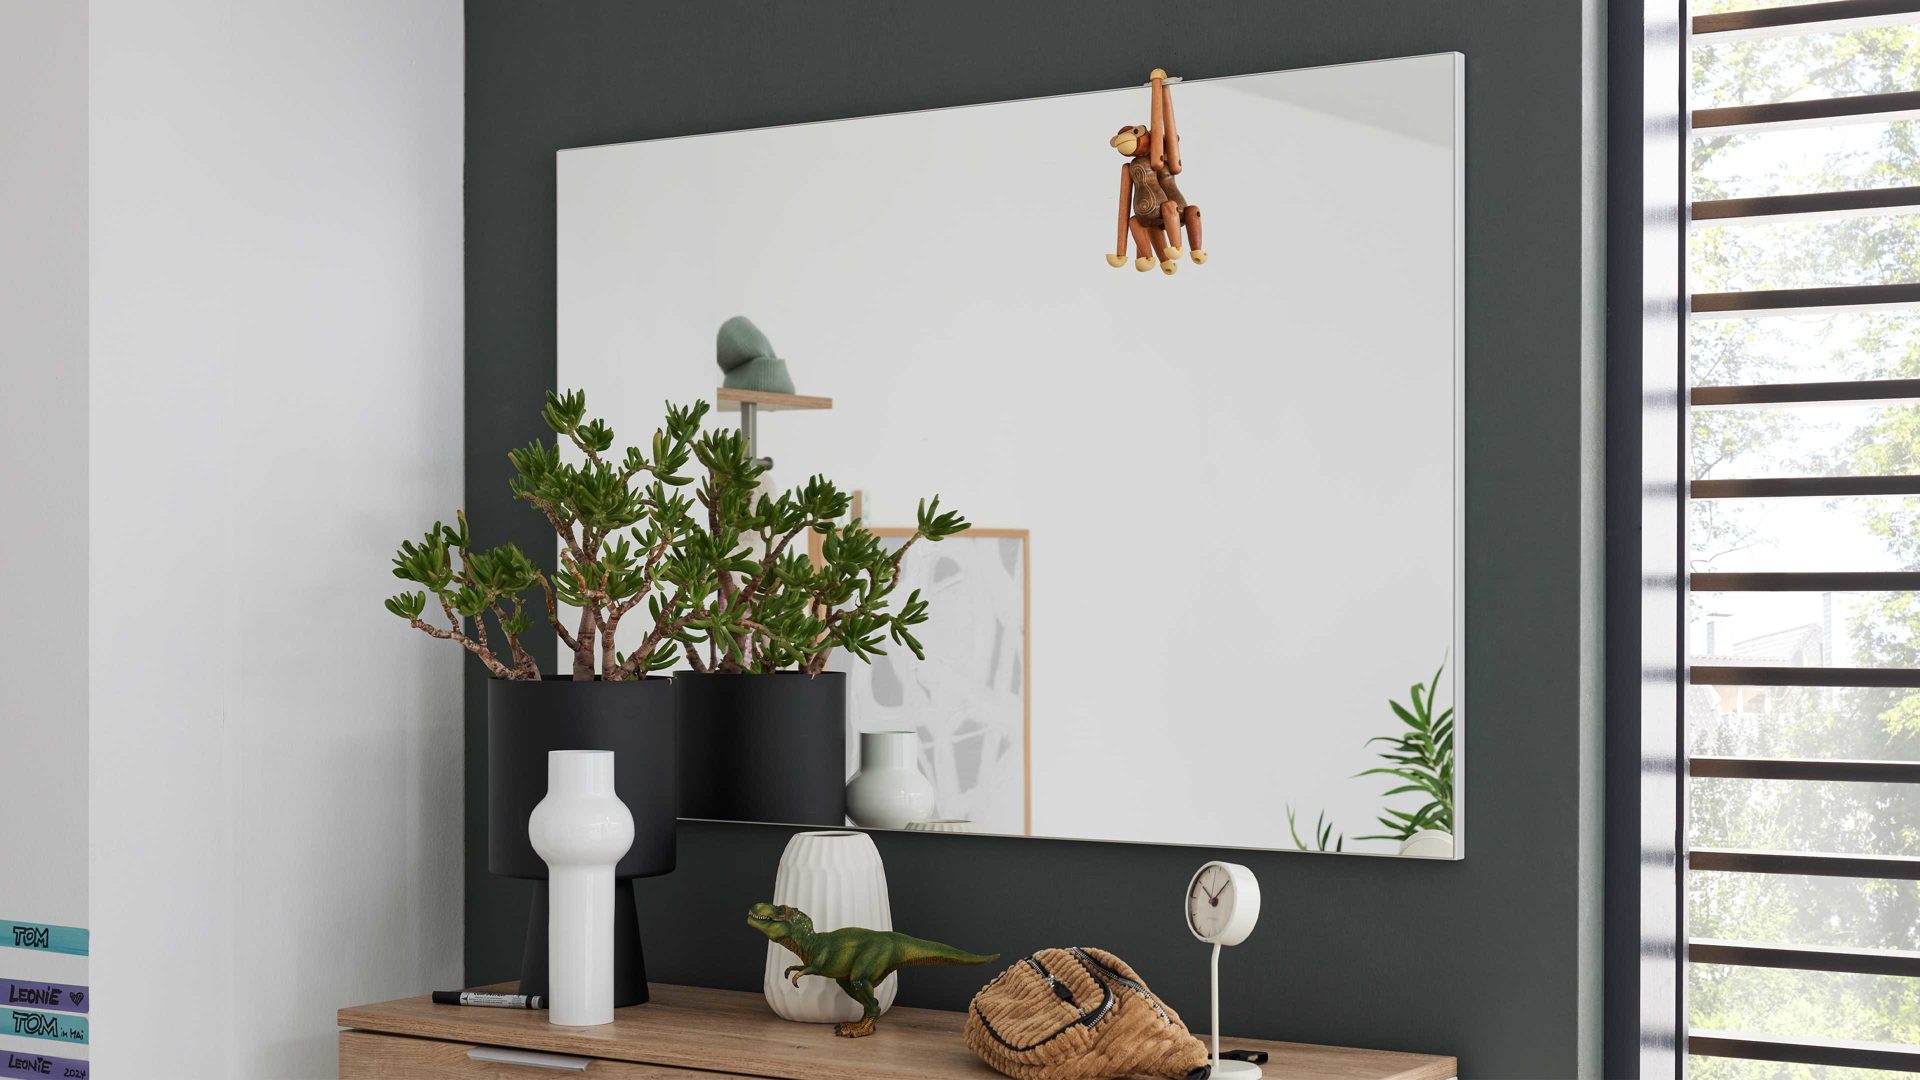 Wandspiegel Interliving aus Spiegel in Transparent Interliving Garderobe Serie 6012 - Spiegel INL-702 weißer Mattlack - ca. 120 x 82 cm